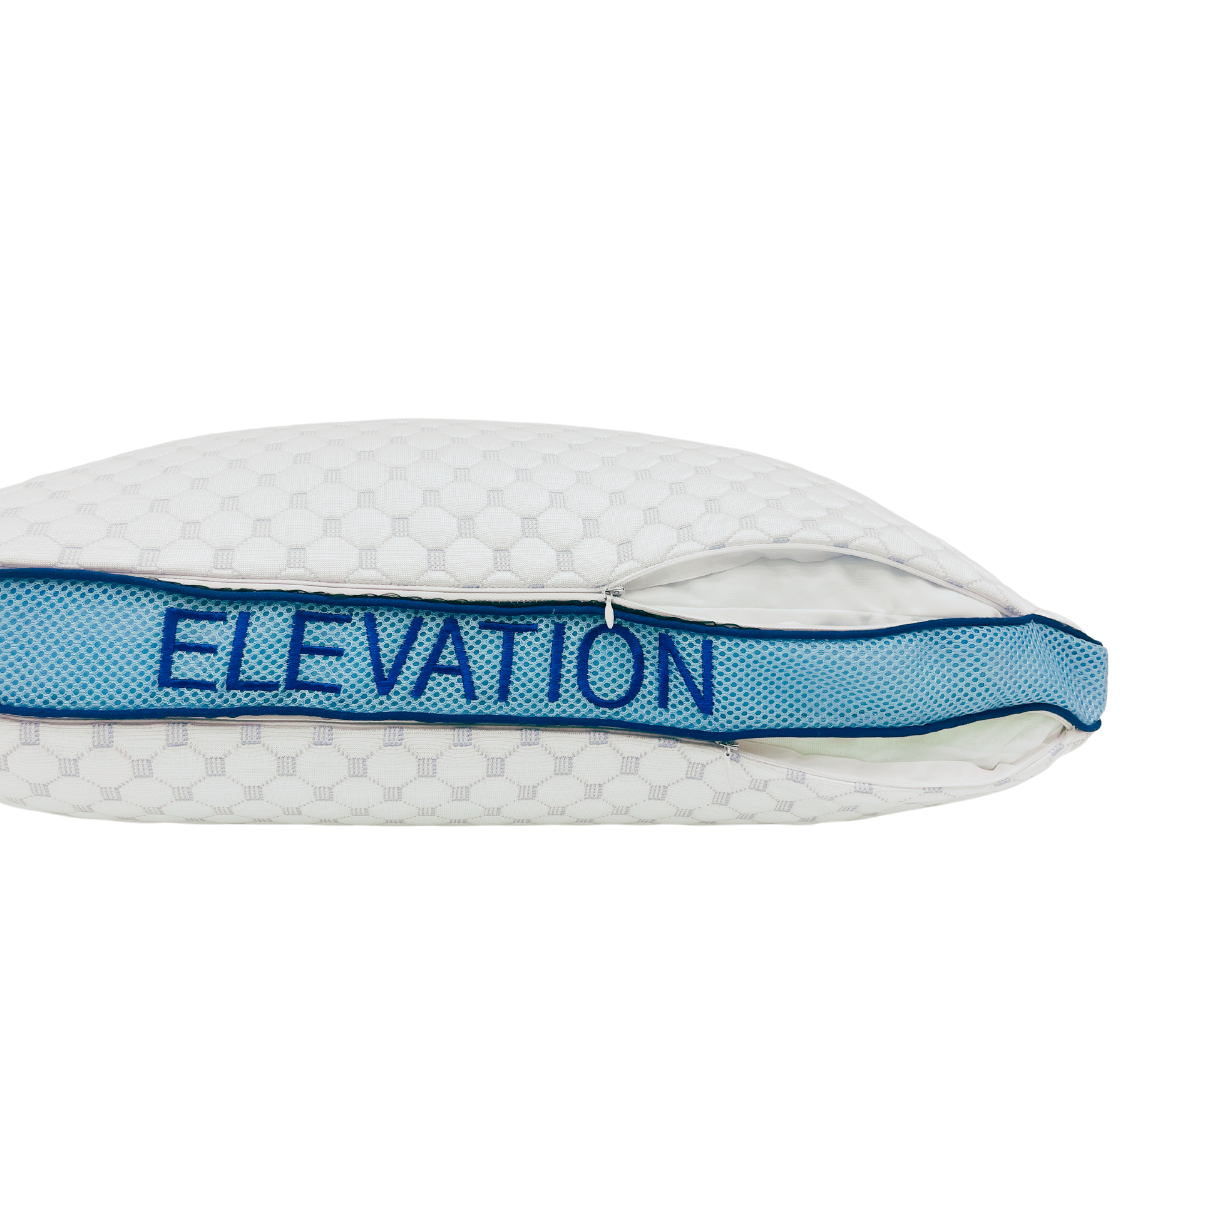 Wesloft Elevation Pillow